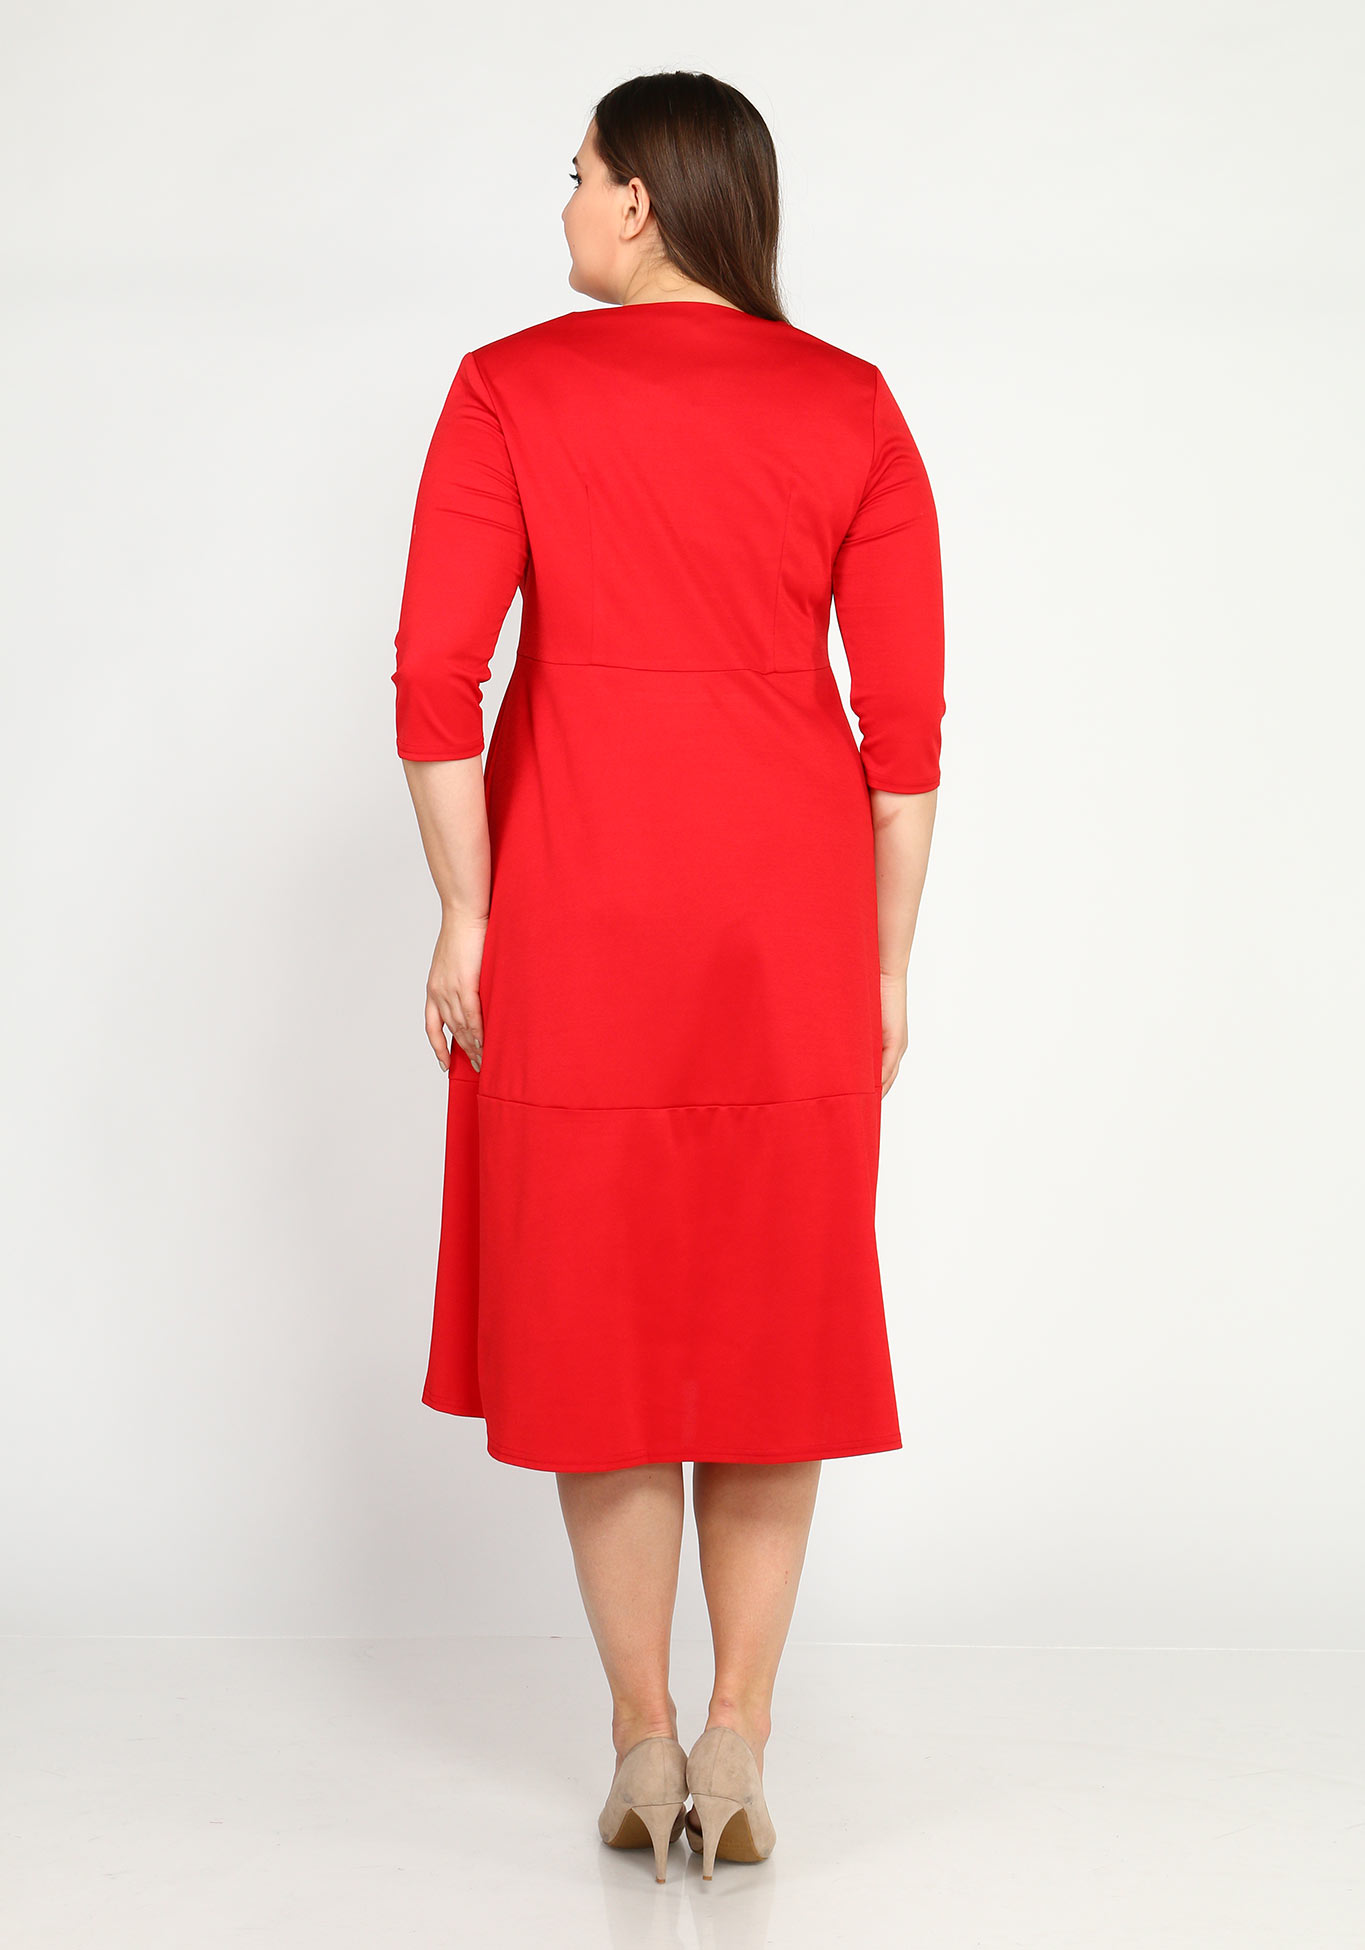 Платье А-силуэта с рукавом 3/4 и брошью Kumar collection, размер 64, цвет красный - фото 3